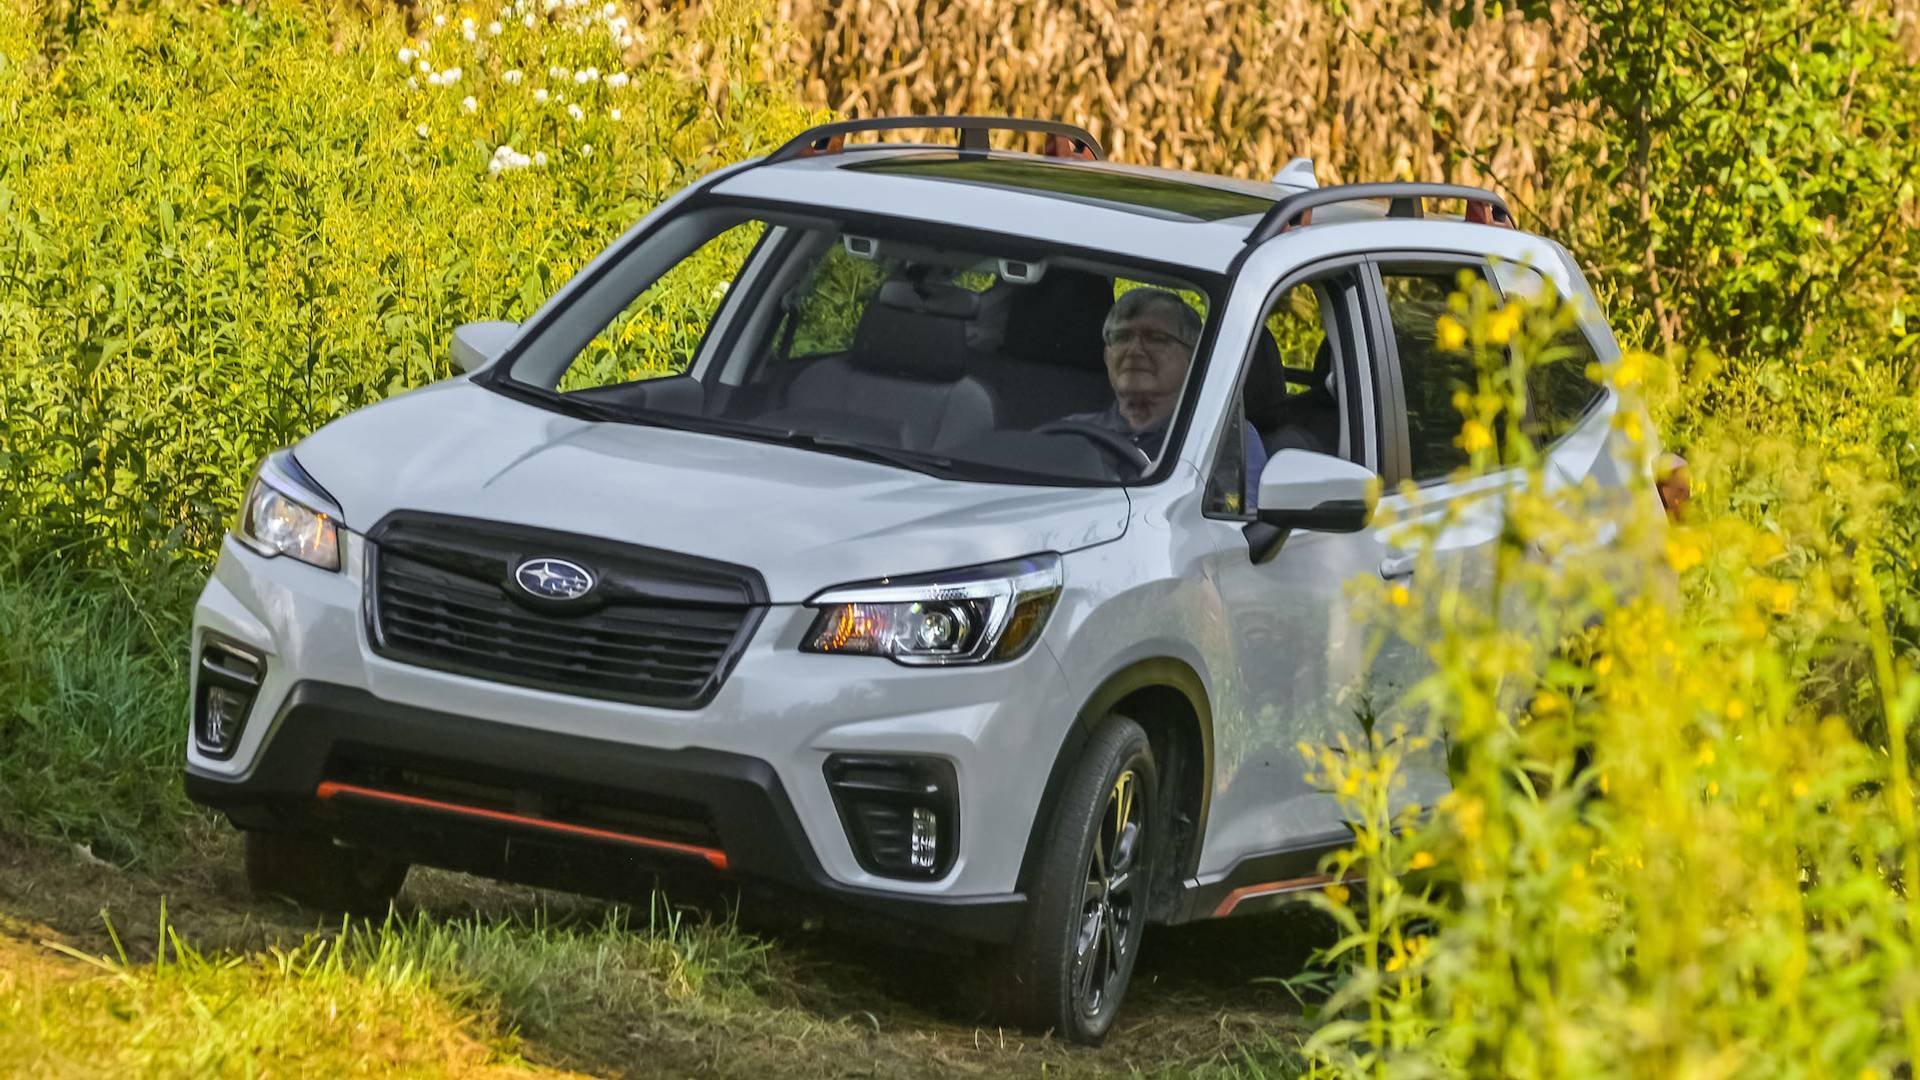 Subaru привезет в Россию три новинки в 2020 году